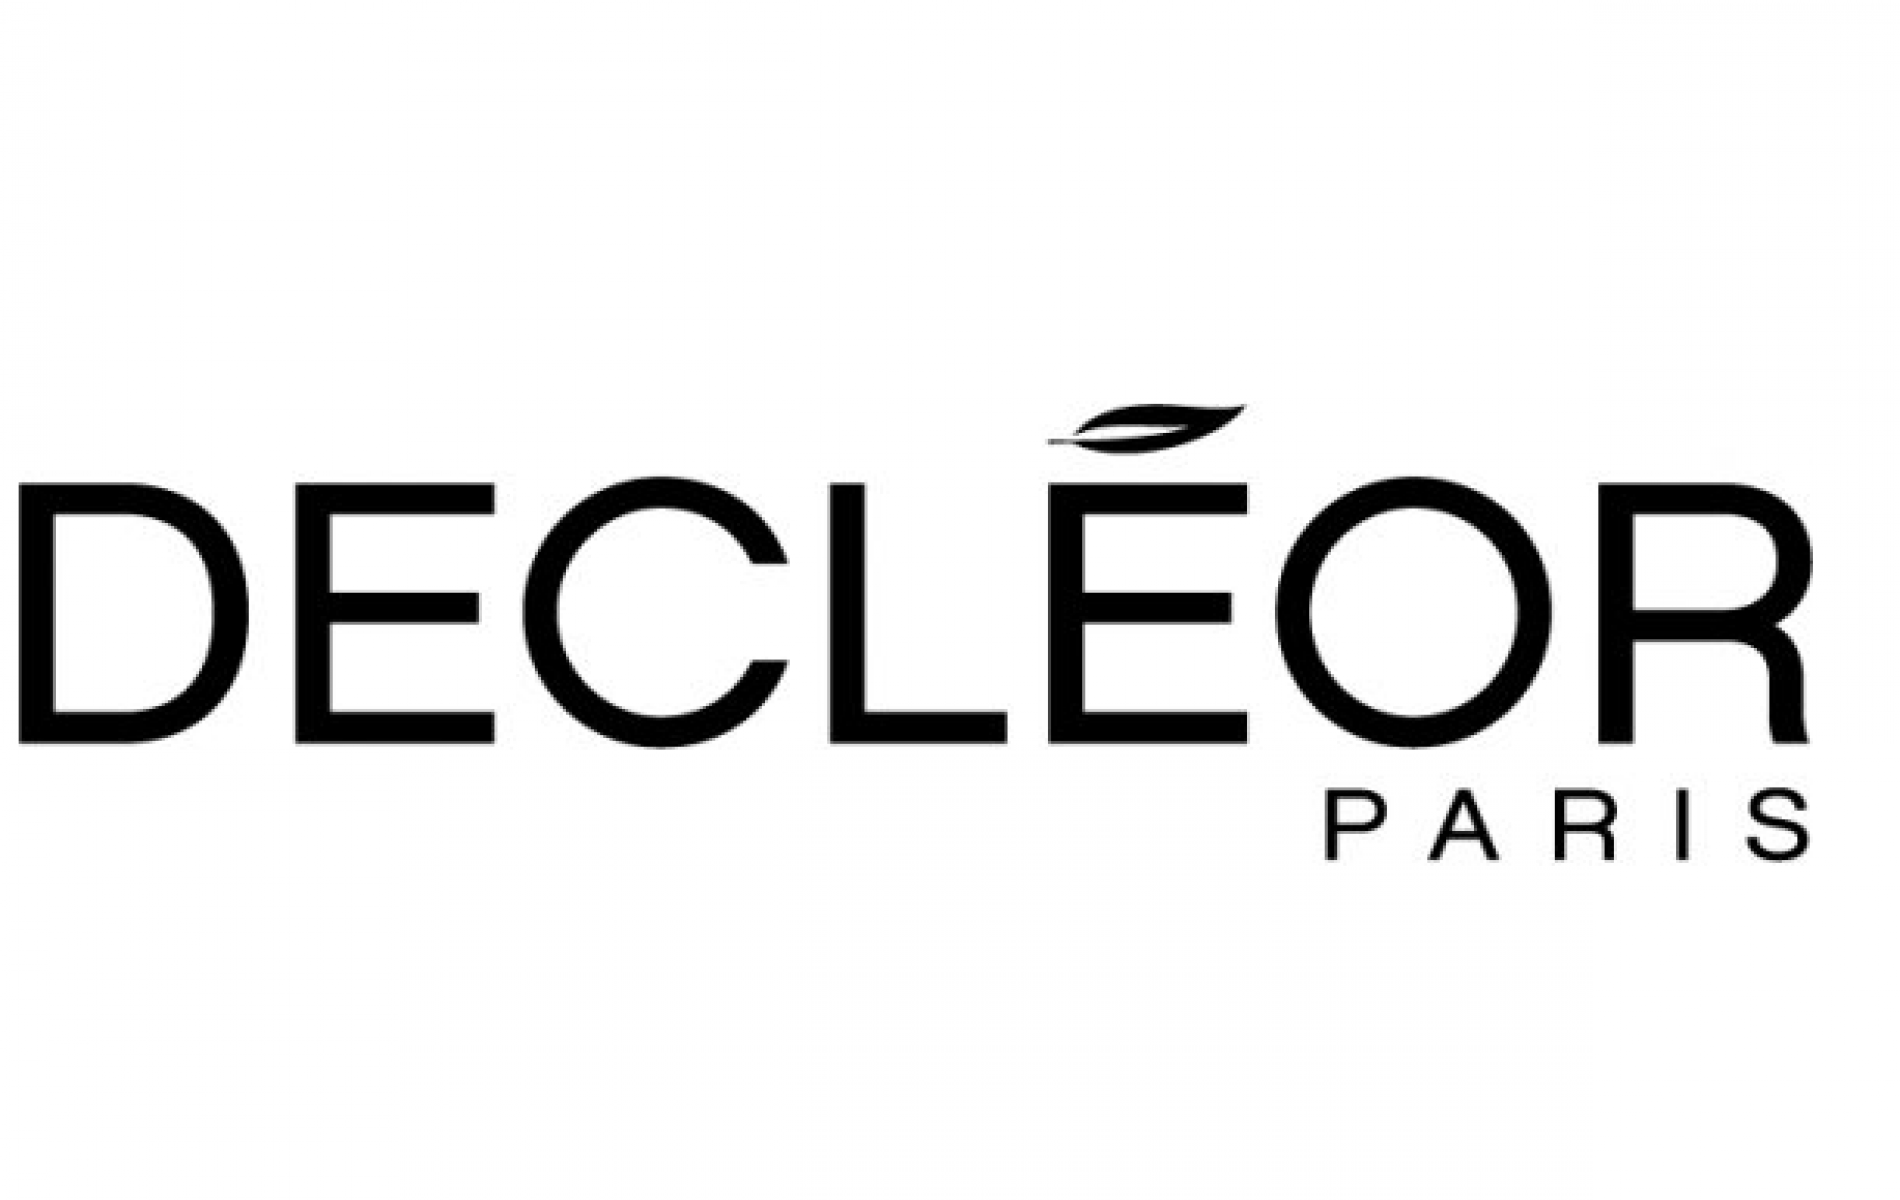 Decleor Paris logo